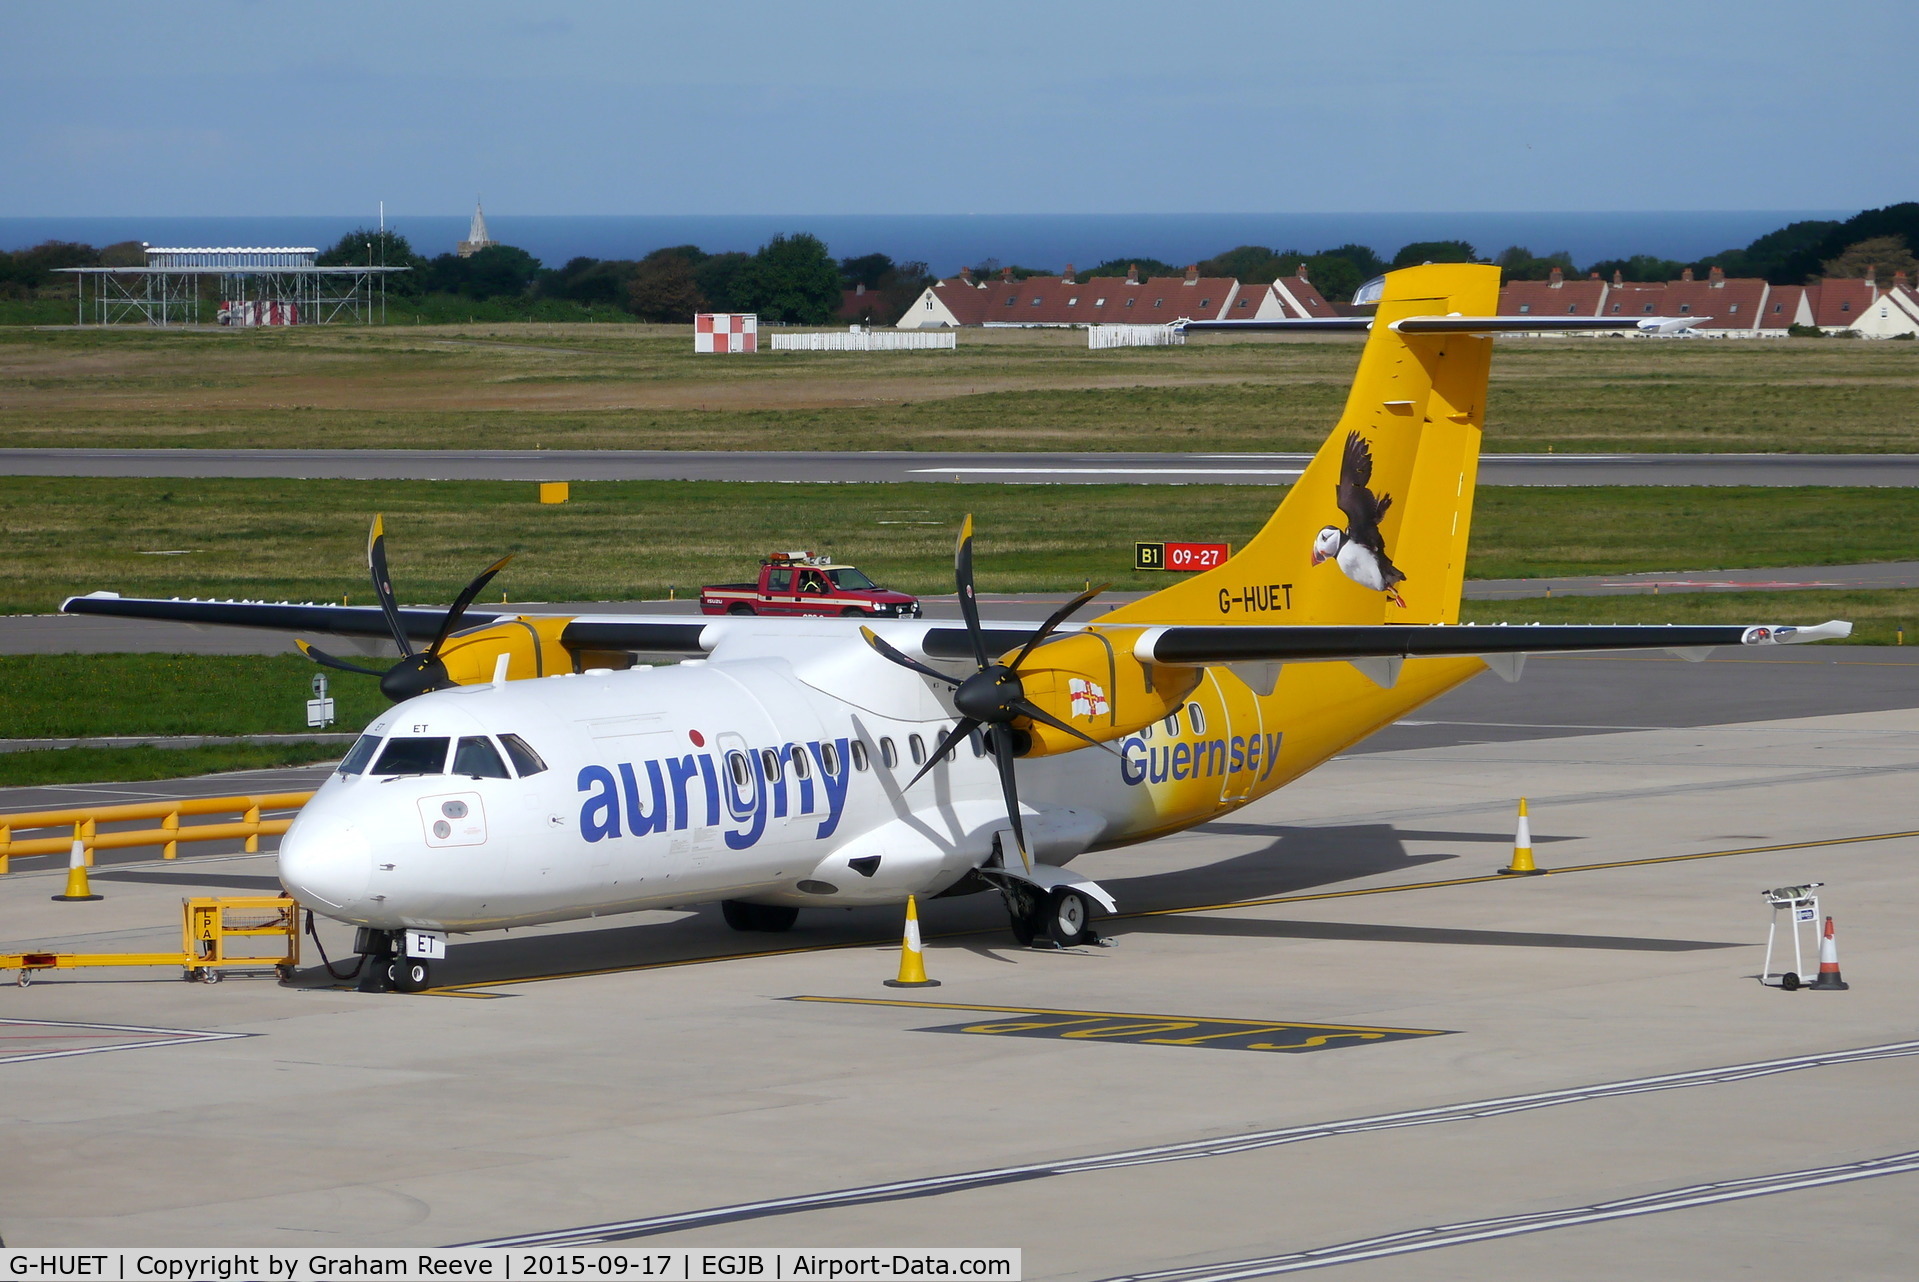 G-HUET, 1999 ATR 42-500 C/N 584, Parked at Guernsey.